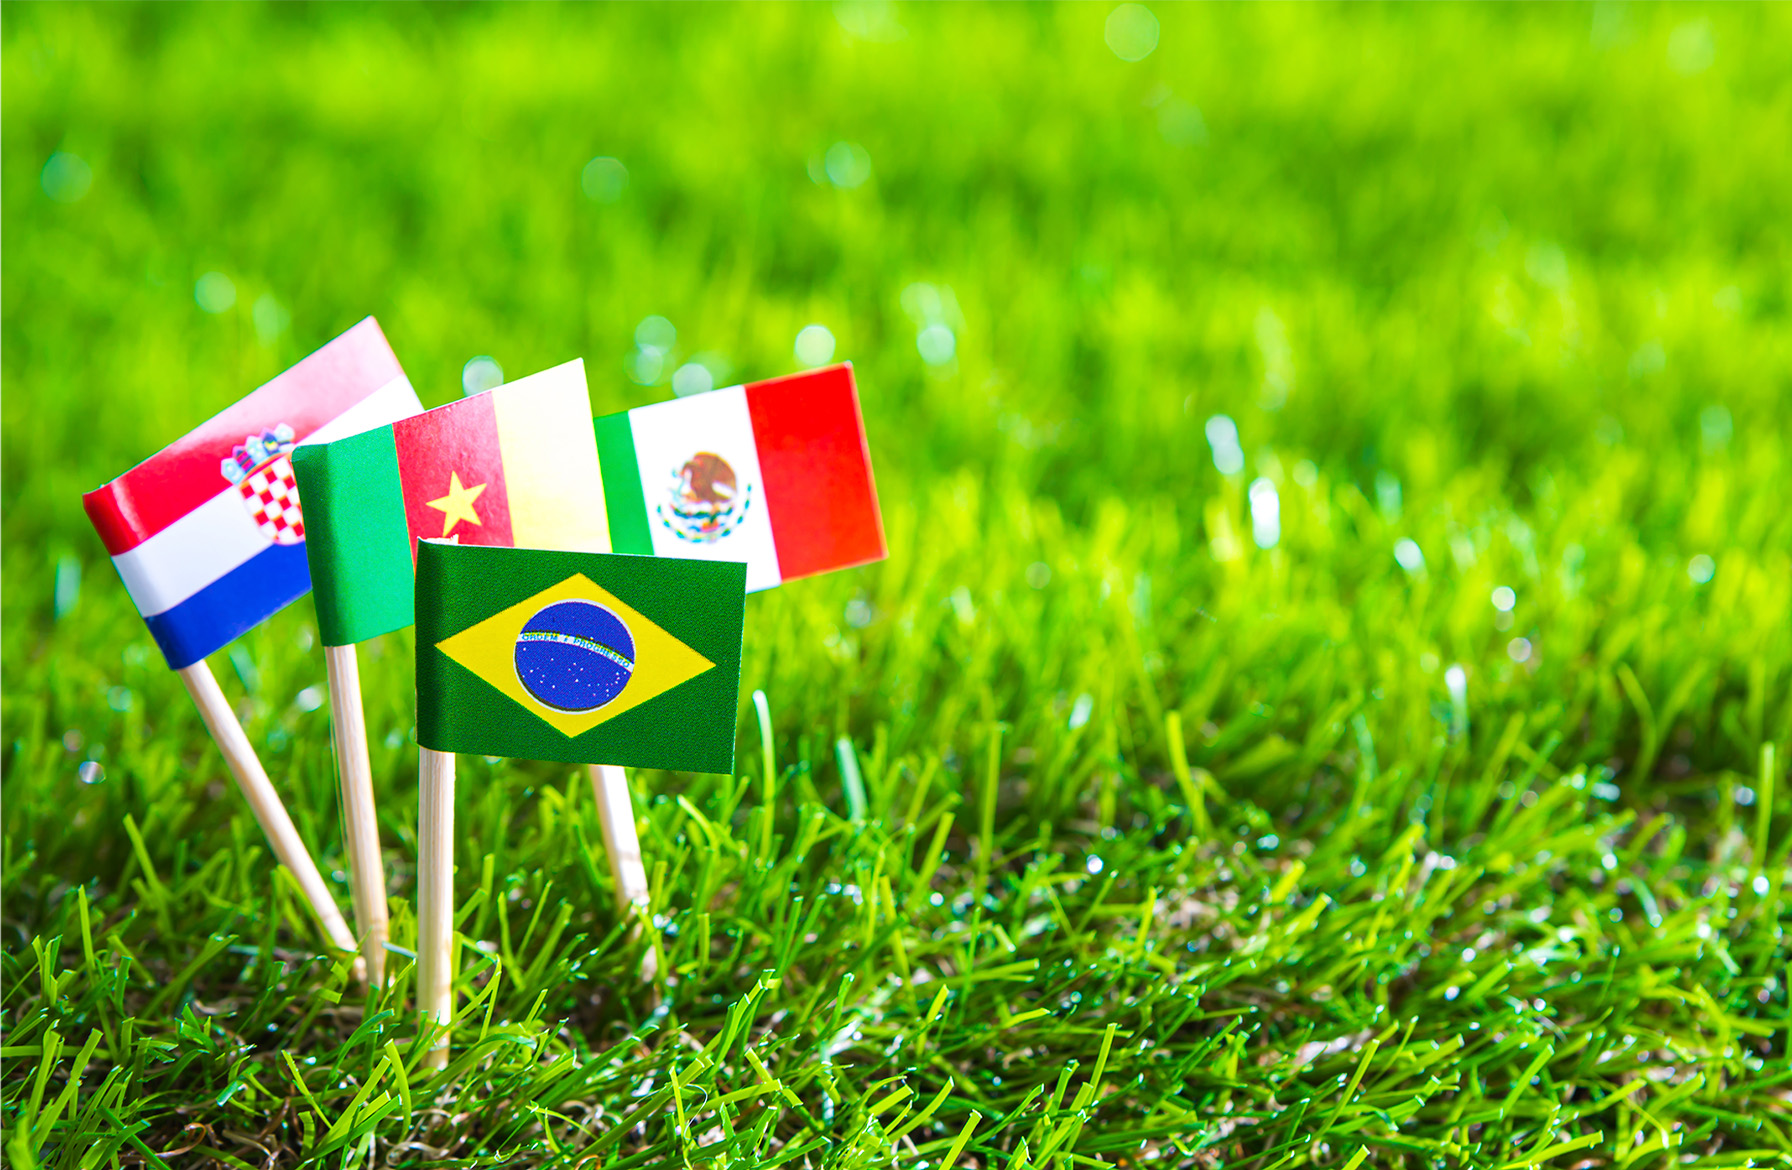 Jogos do Brasil Copa do Mundo: confira os horários